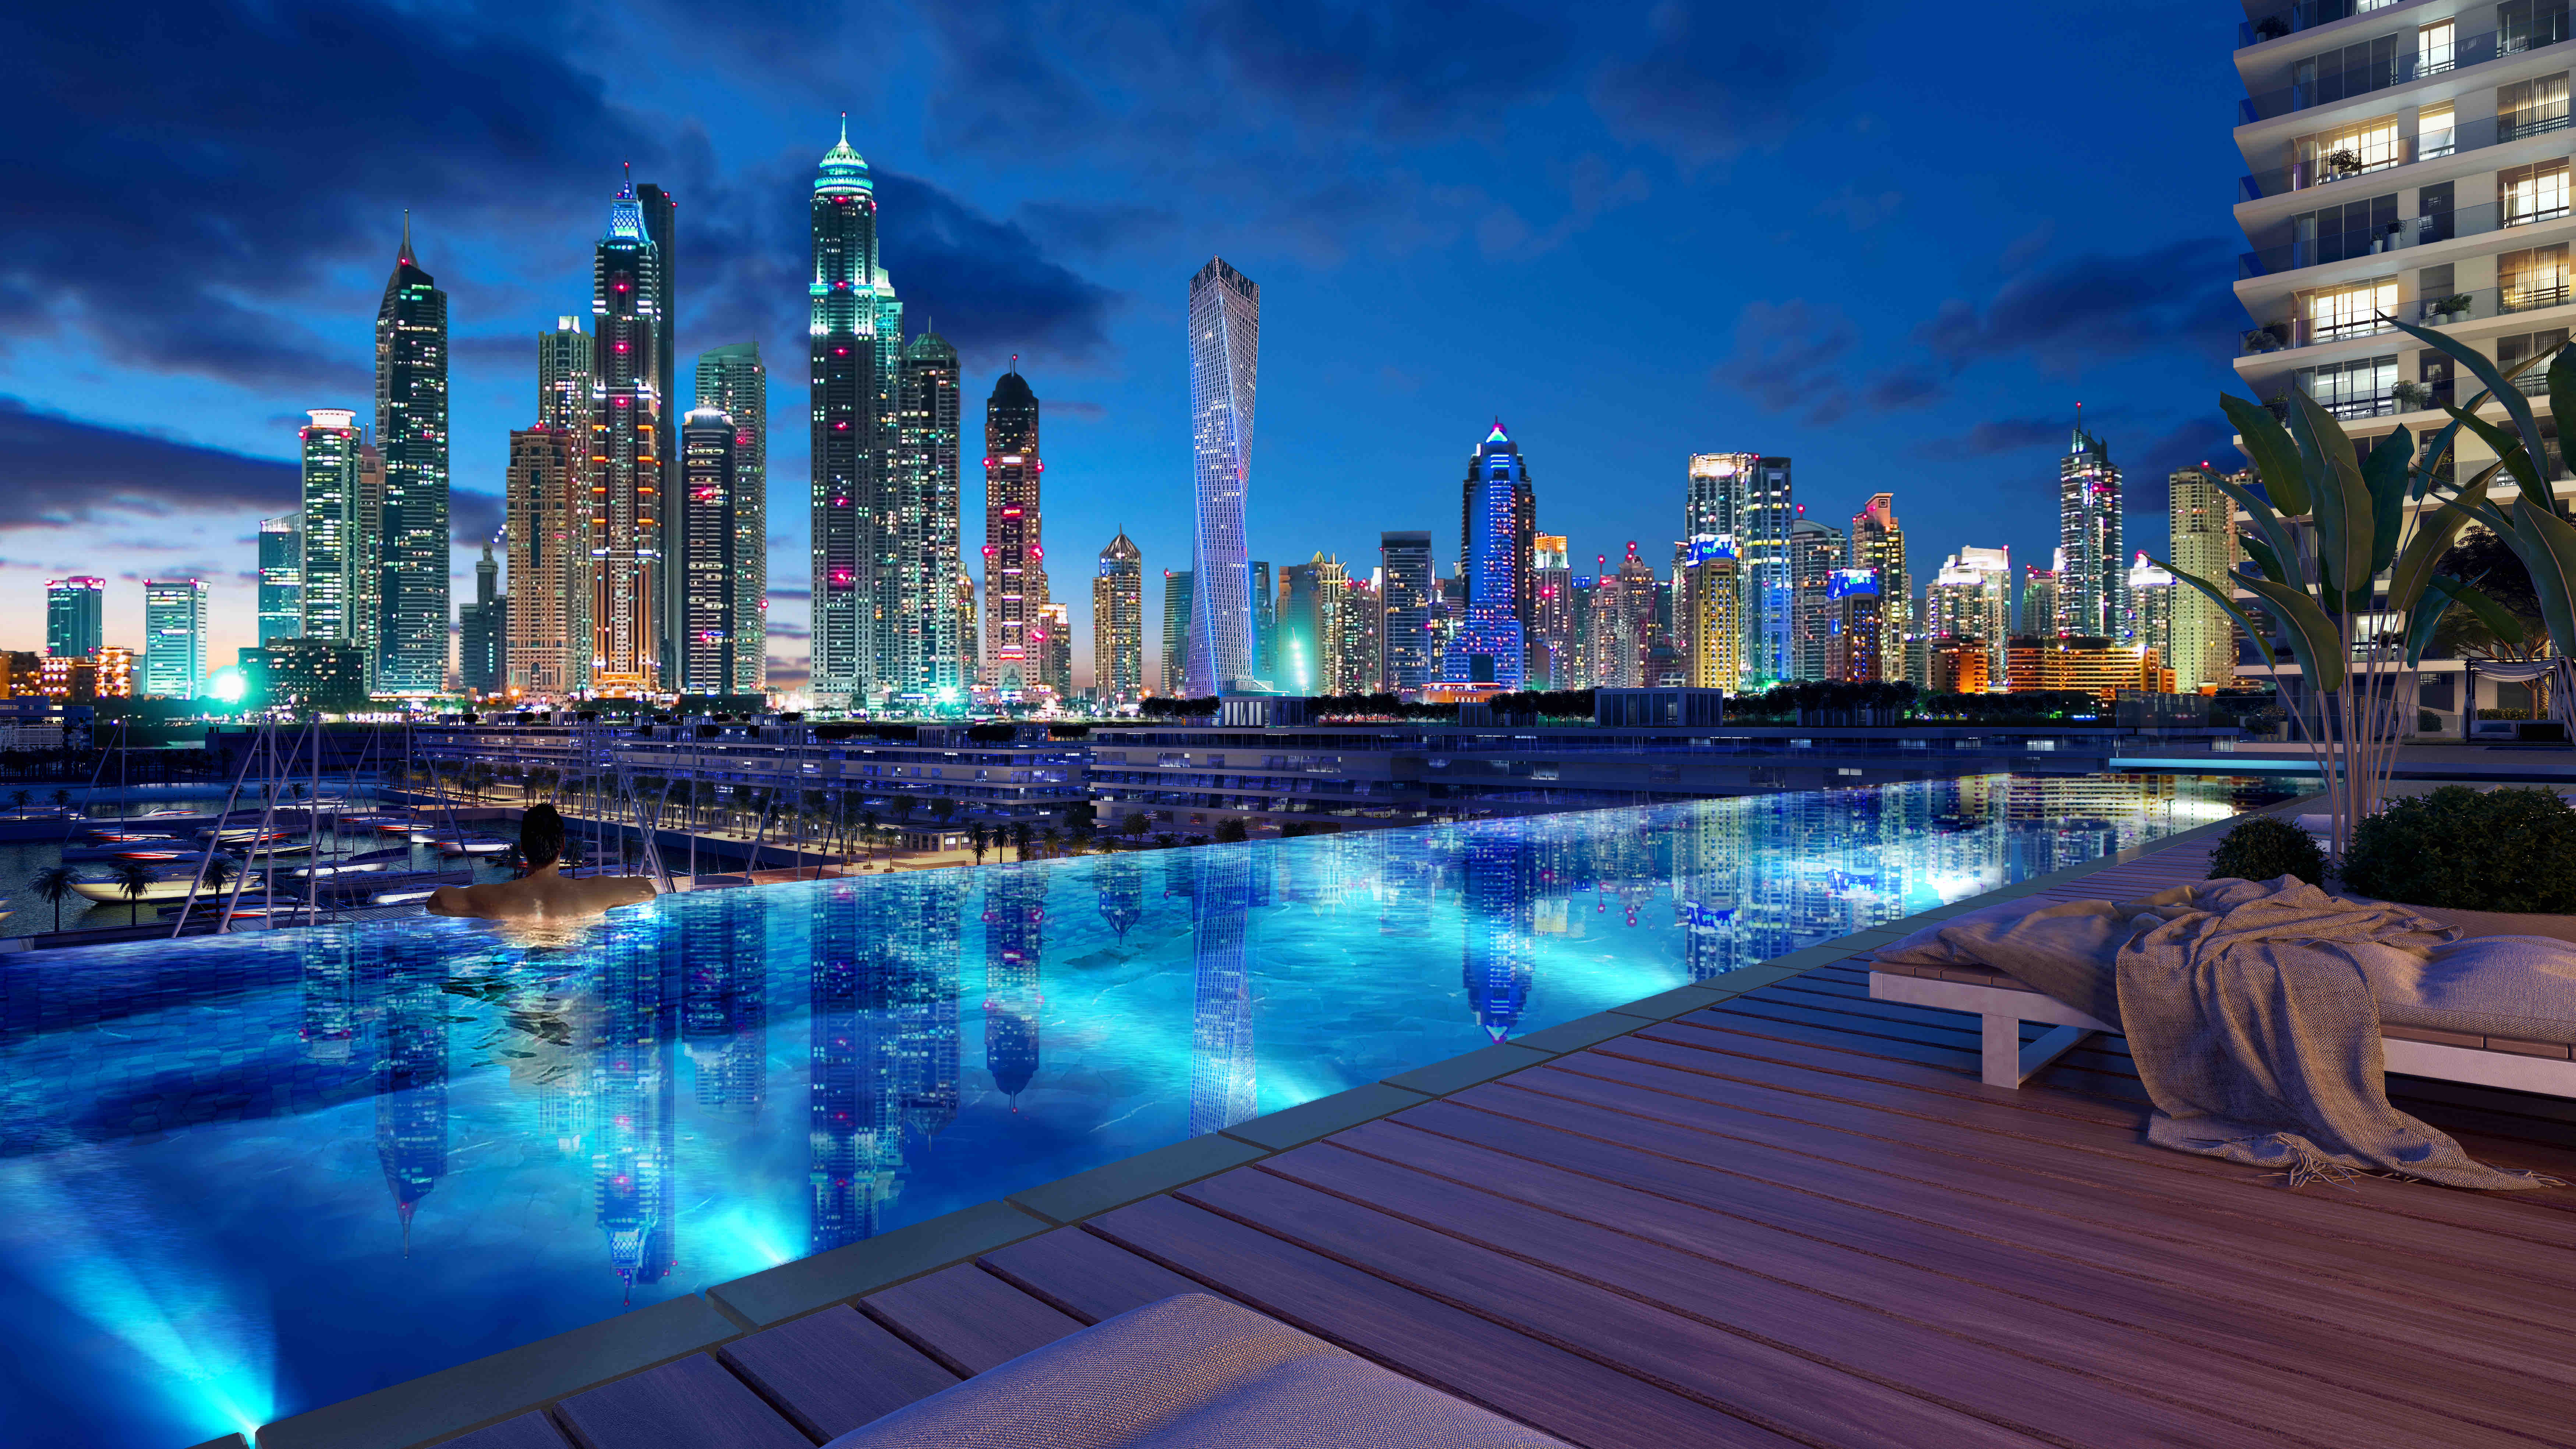 Sunrise Bay - Dubai Marina